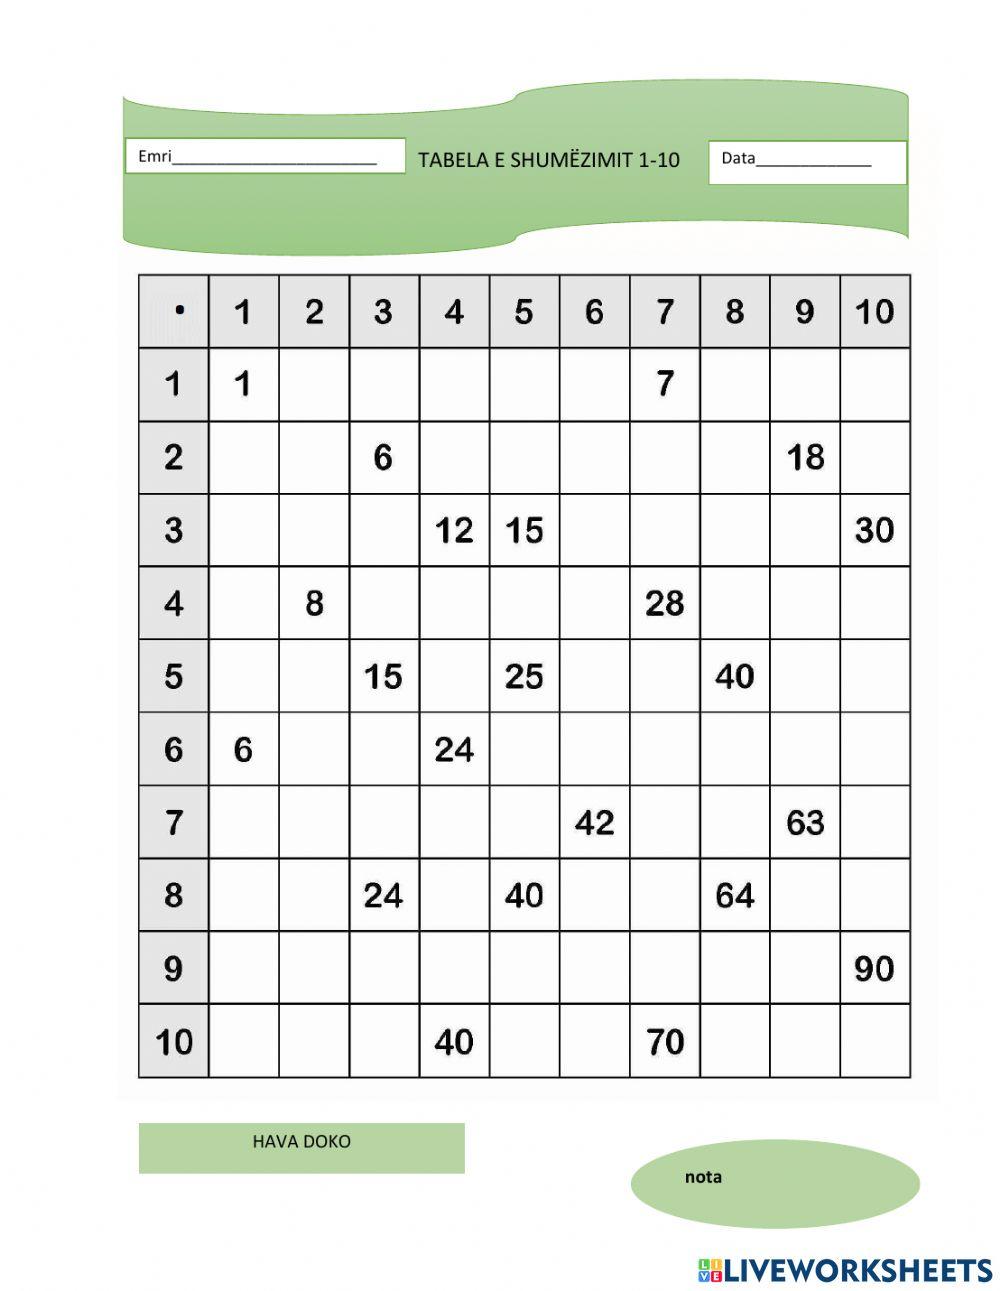 Tabela e shumëzimit 1-10